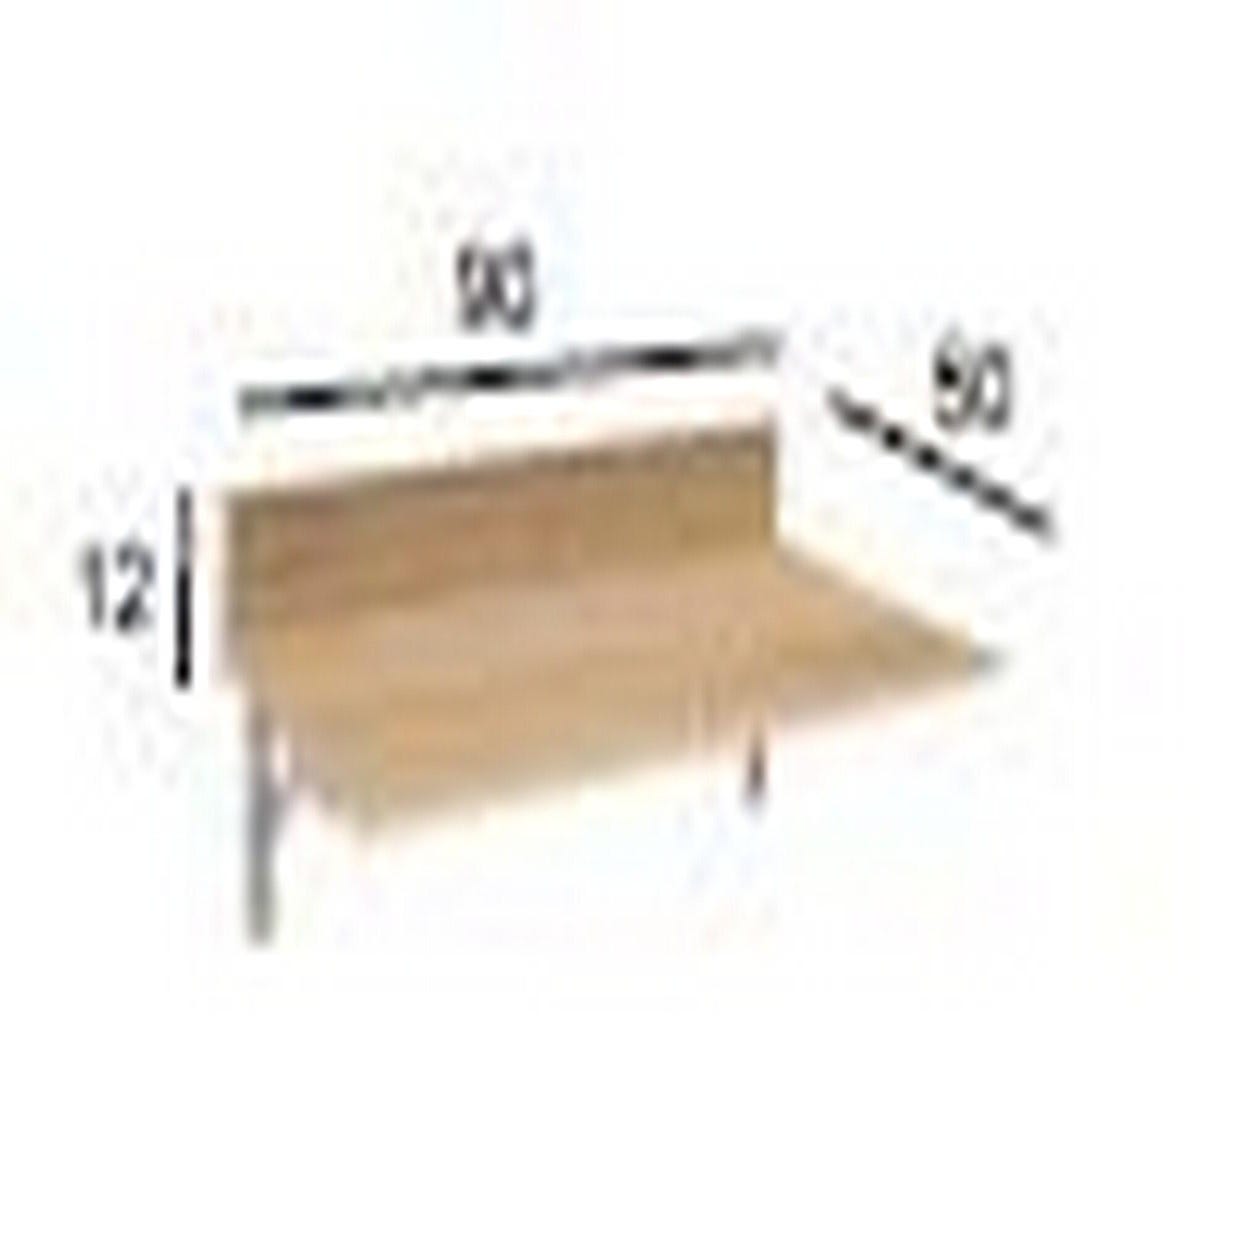 Mesa de cocina rectangular blanca y aluminio Ainhoa de 50 x x 90 cm